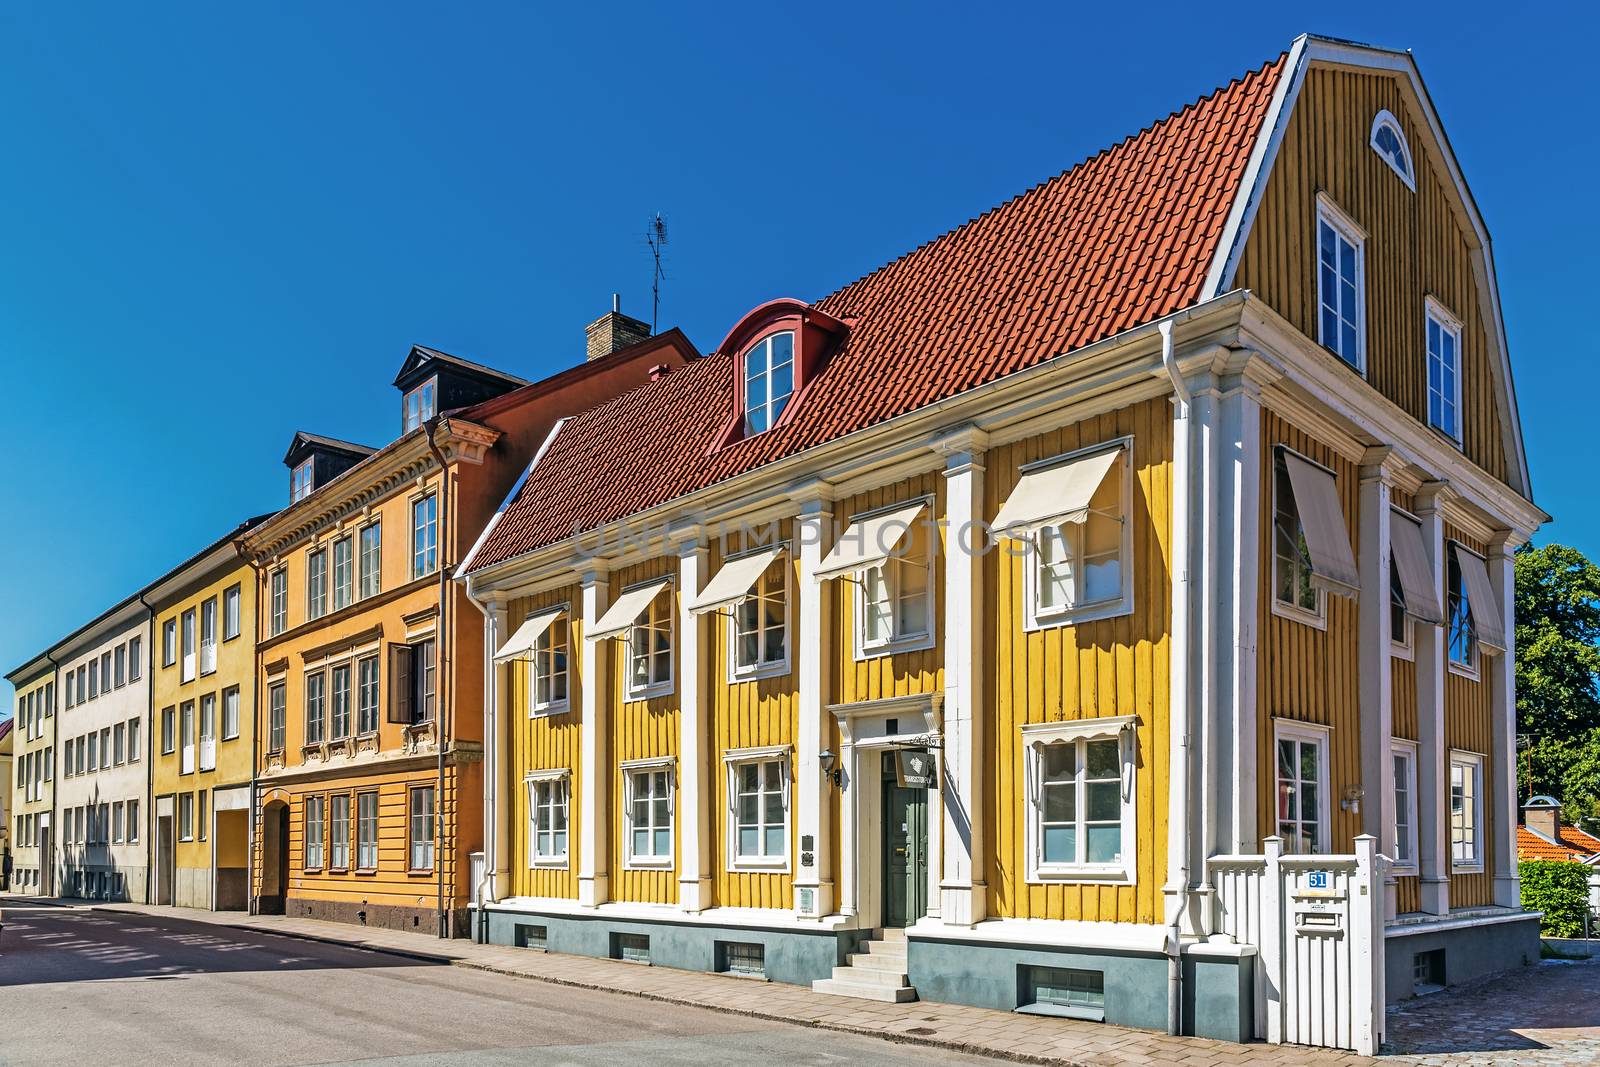 Small residential houses in Kalmar by pawel_szczepanski